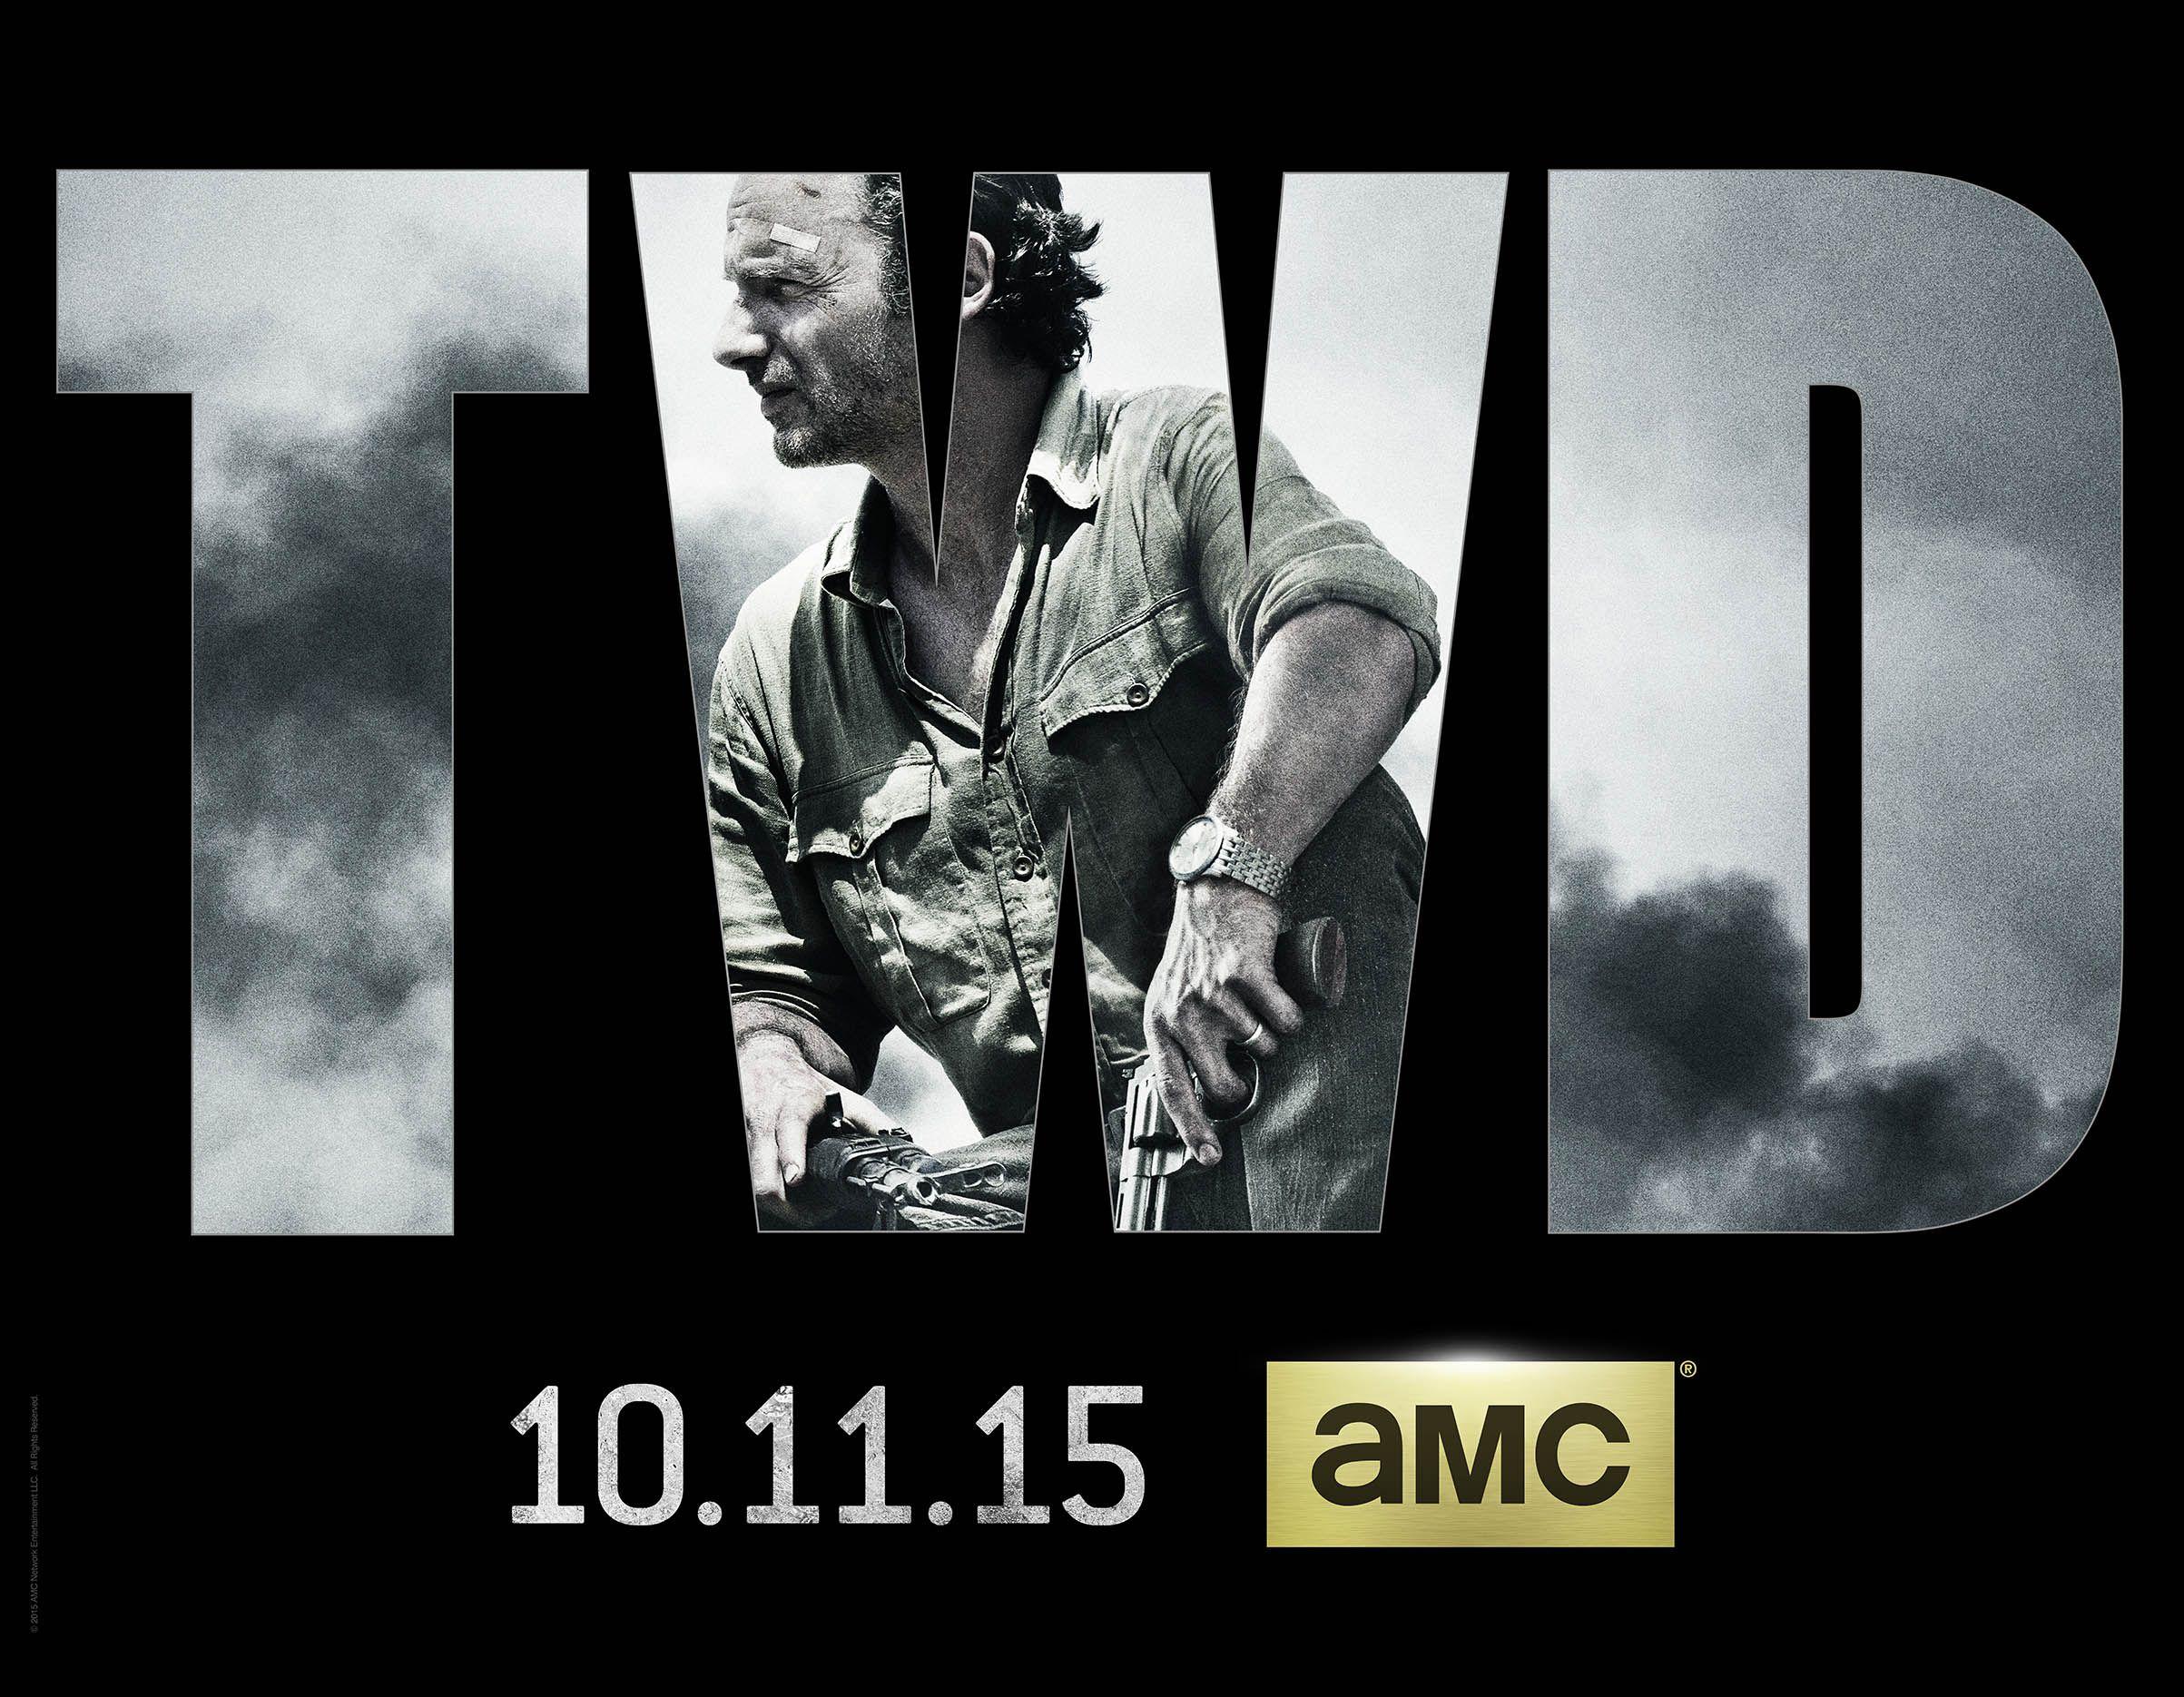 TWD Logo - Blogs - The Walking Dead - AMC Releases The Walking Dead Season 6 ...